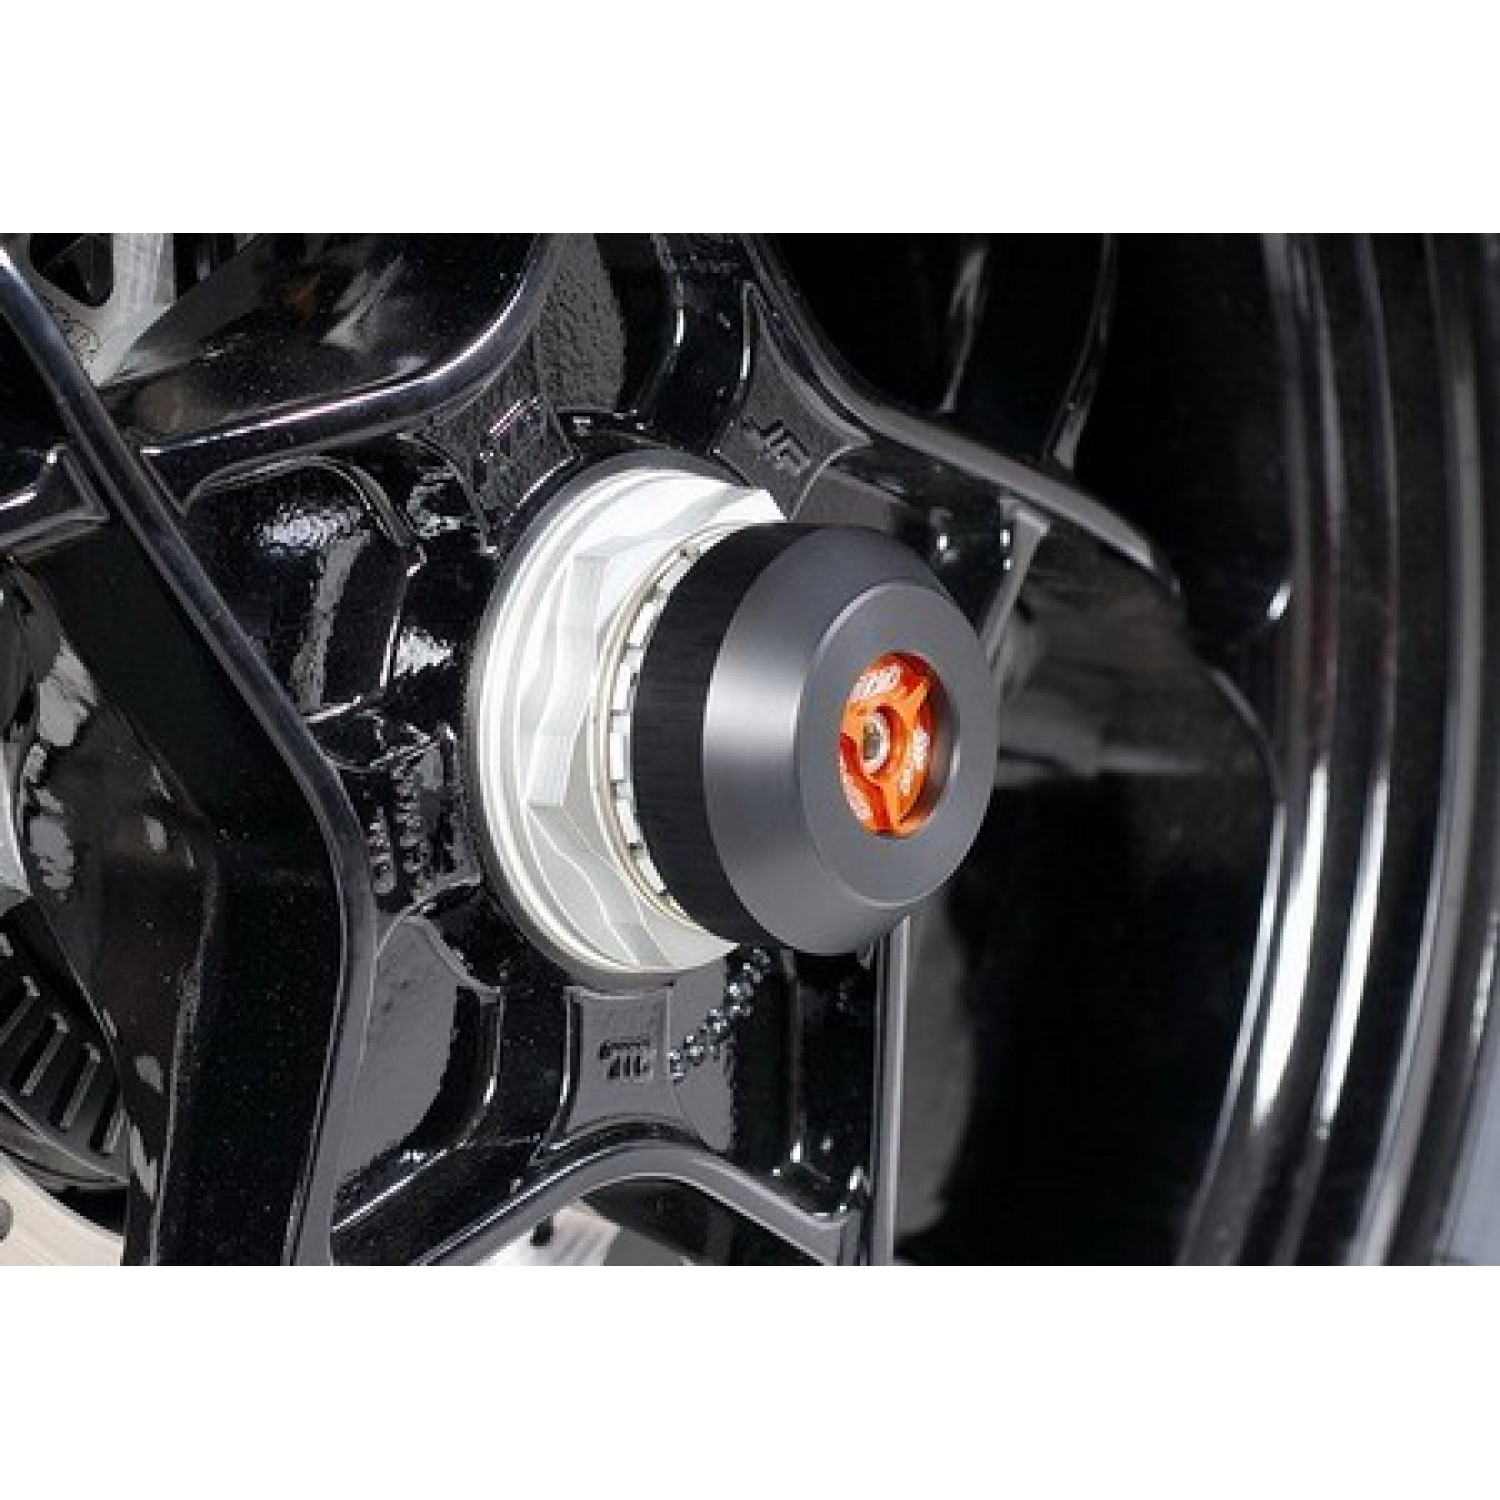 Douille de roue arrière en aluminium plein pour KTM 1290 - Moto Vision